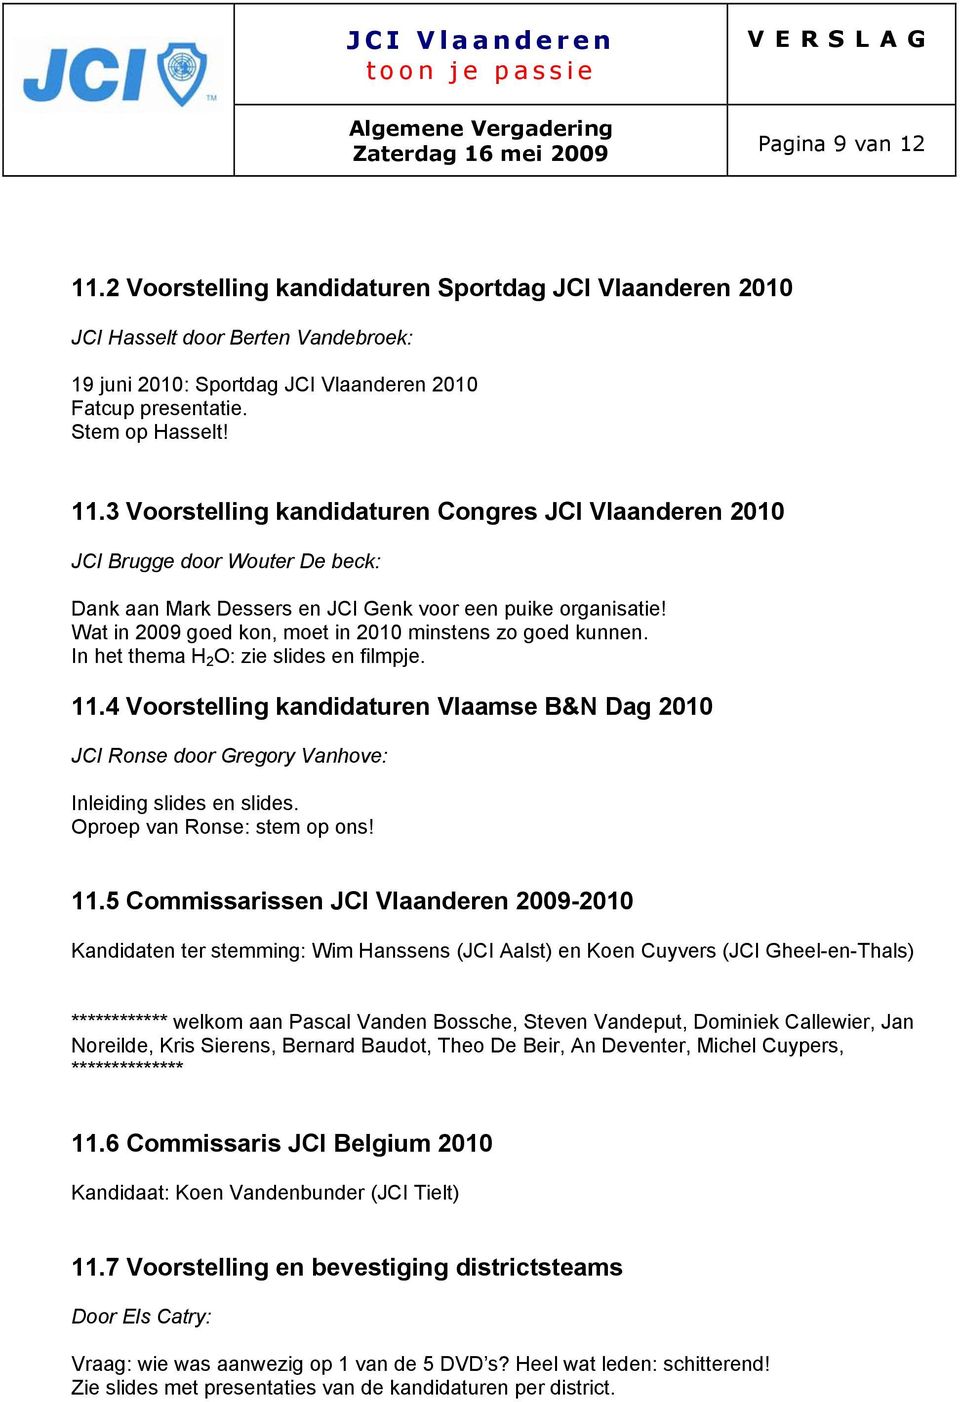 4 Voorstelling kandidaturen Vlaamse B&N Dag 2010 JCI Ronse door Gregory Vanhove: Inleiding slides en slides. Oproep van Ronse: stem op ons! 11.